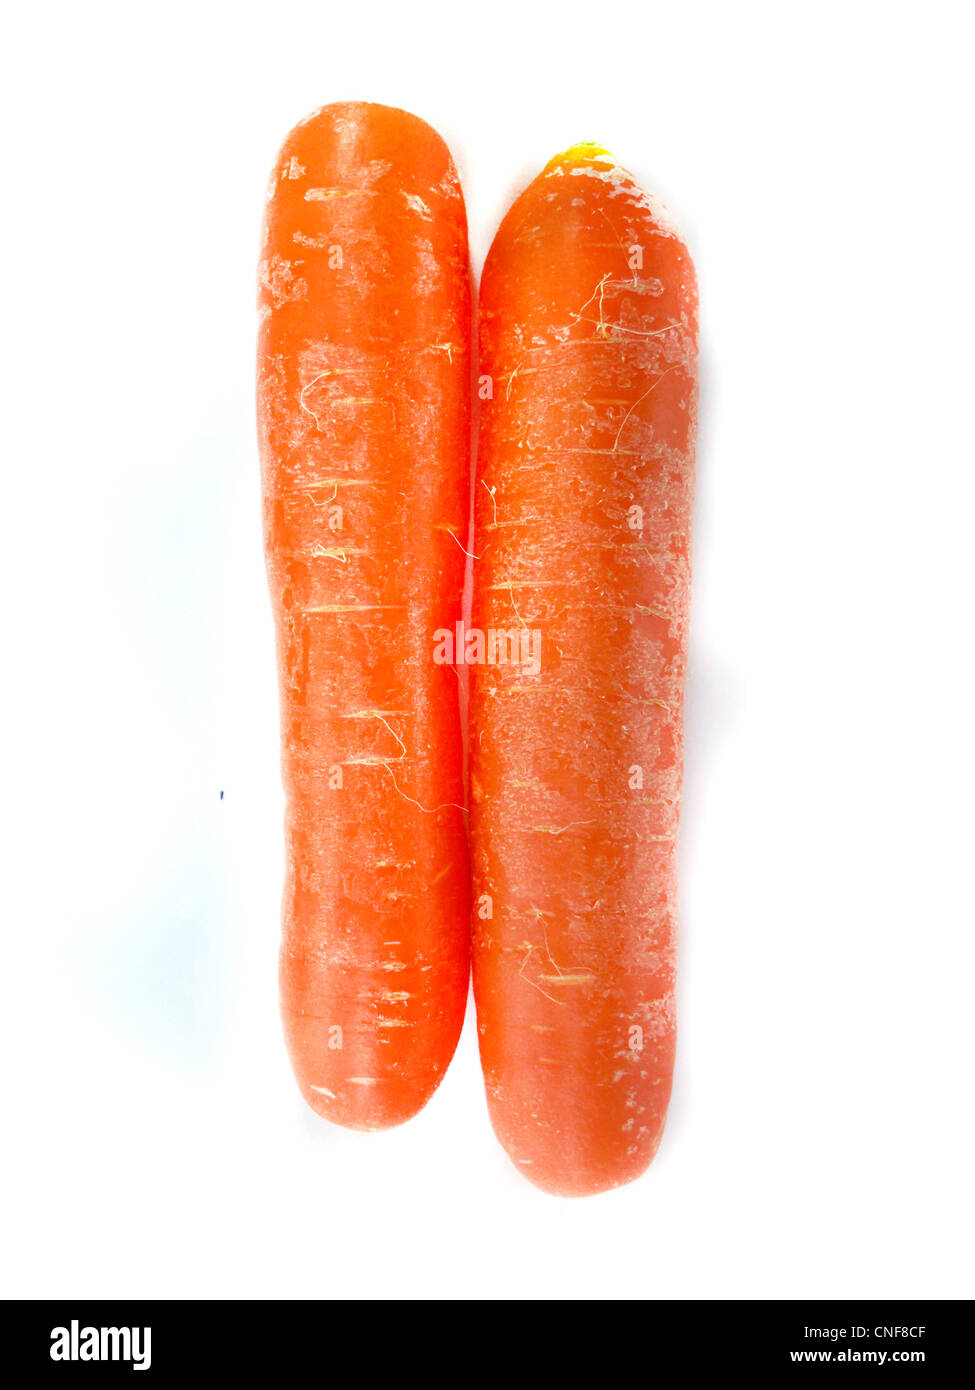 La carotte orange sur fond blanc Banque D'Images